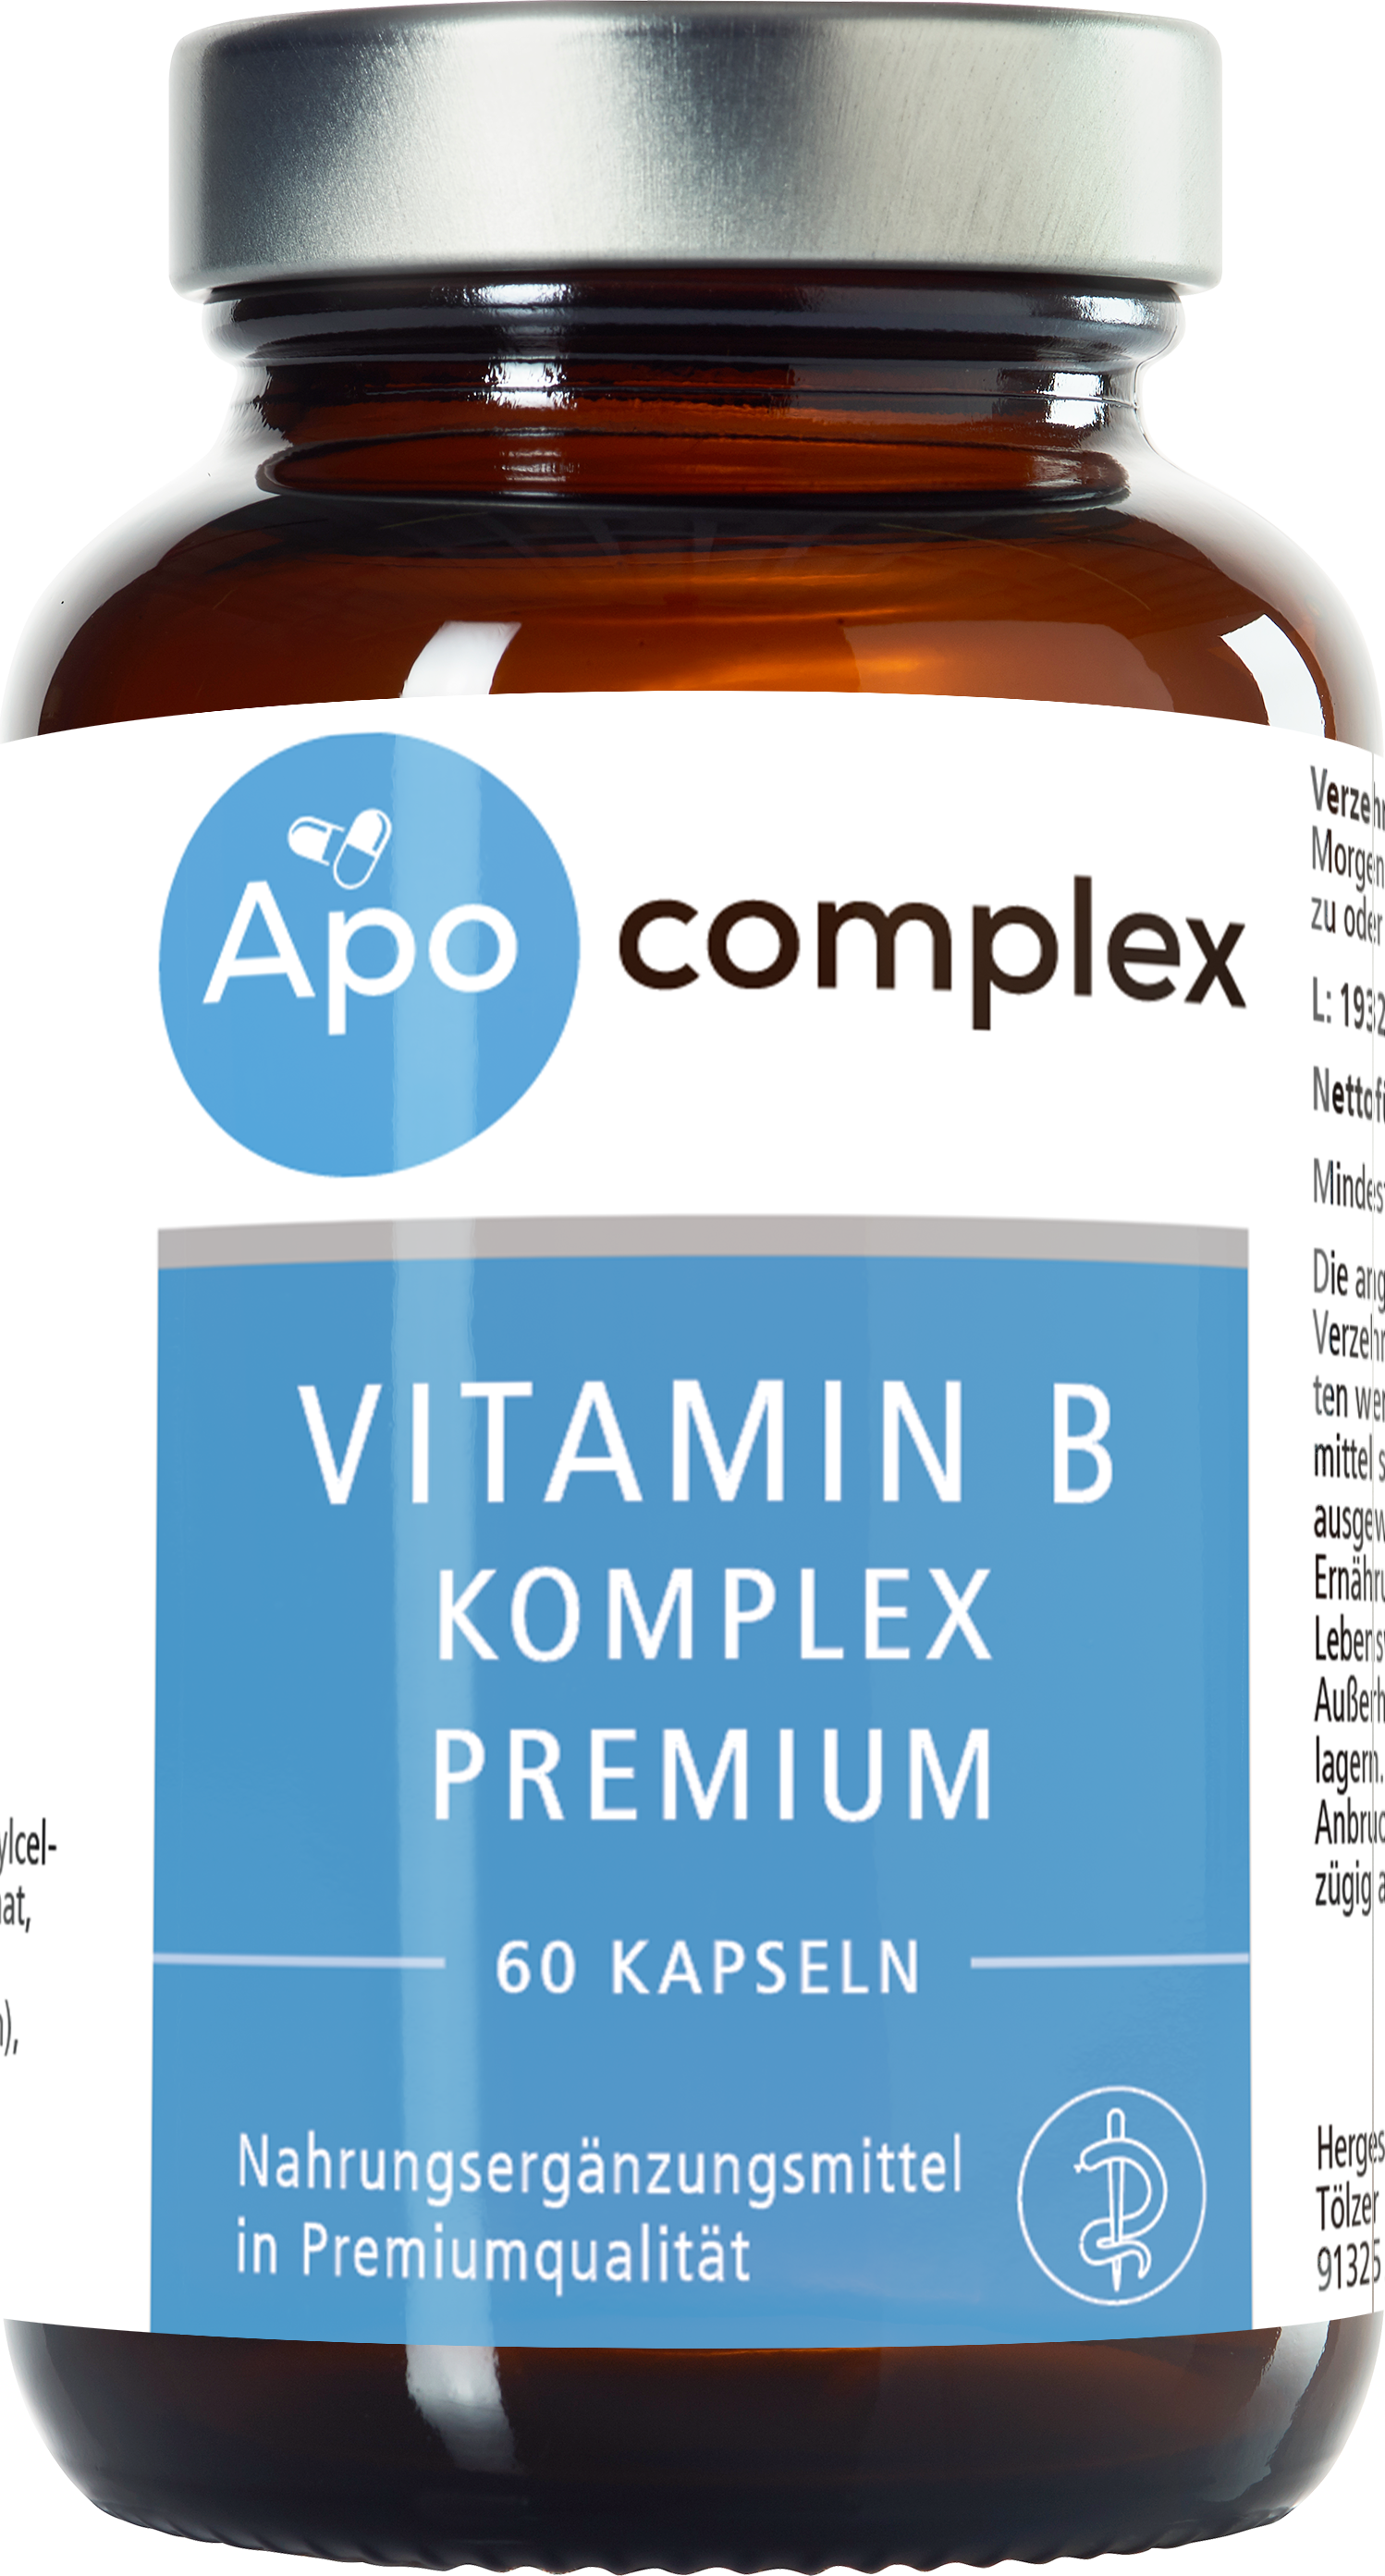 Apocomplex VITAMIN B KOMPLEX PREMIUM